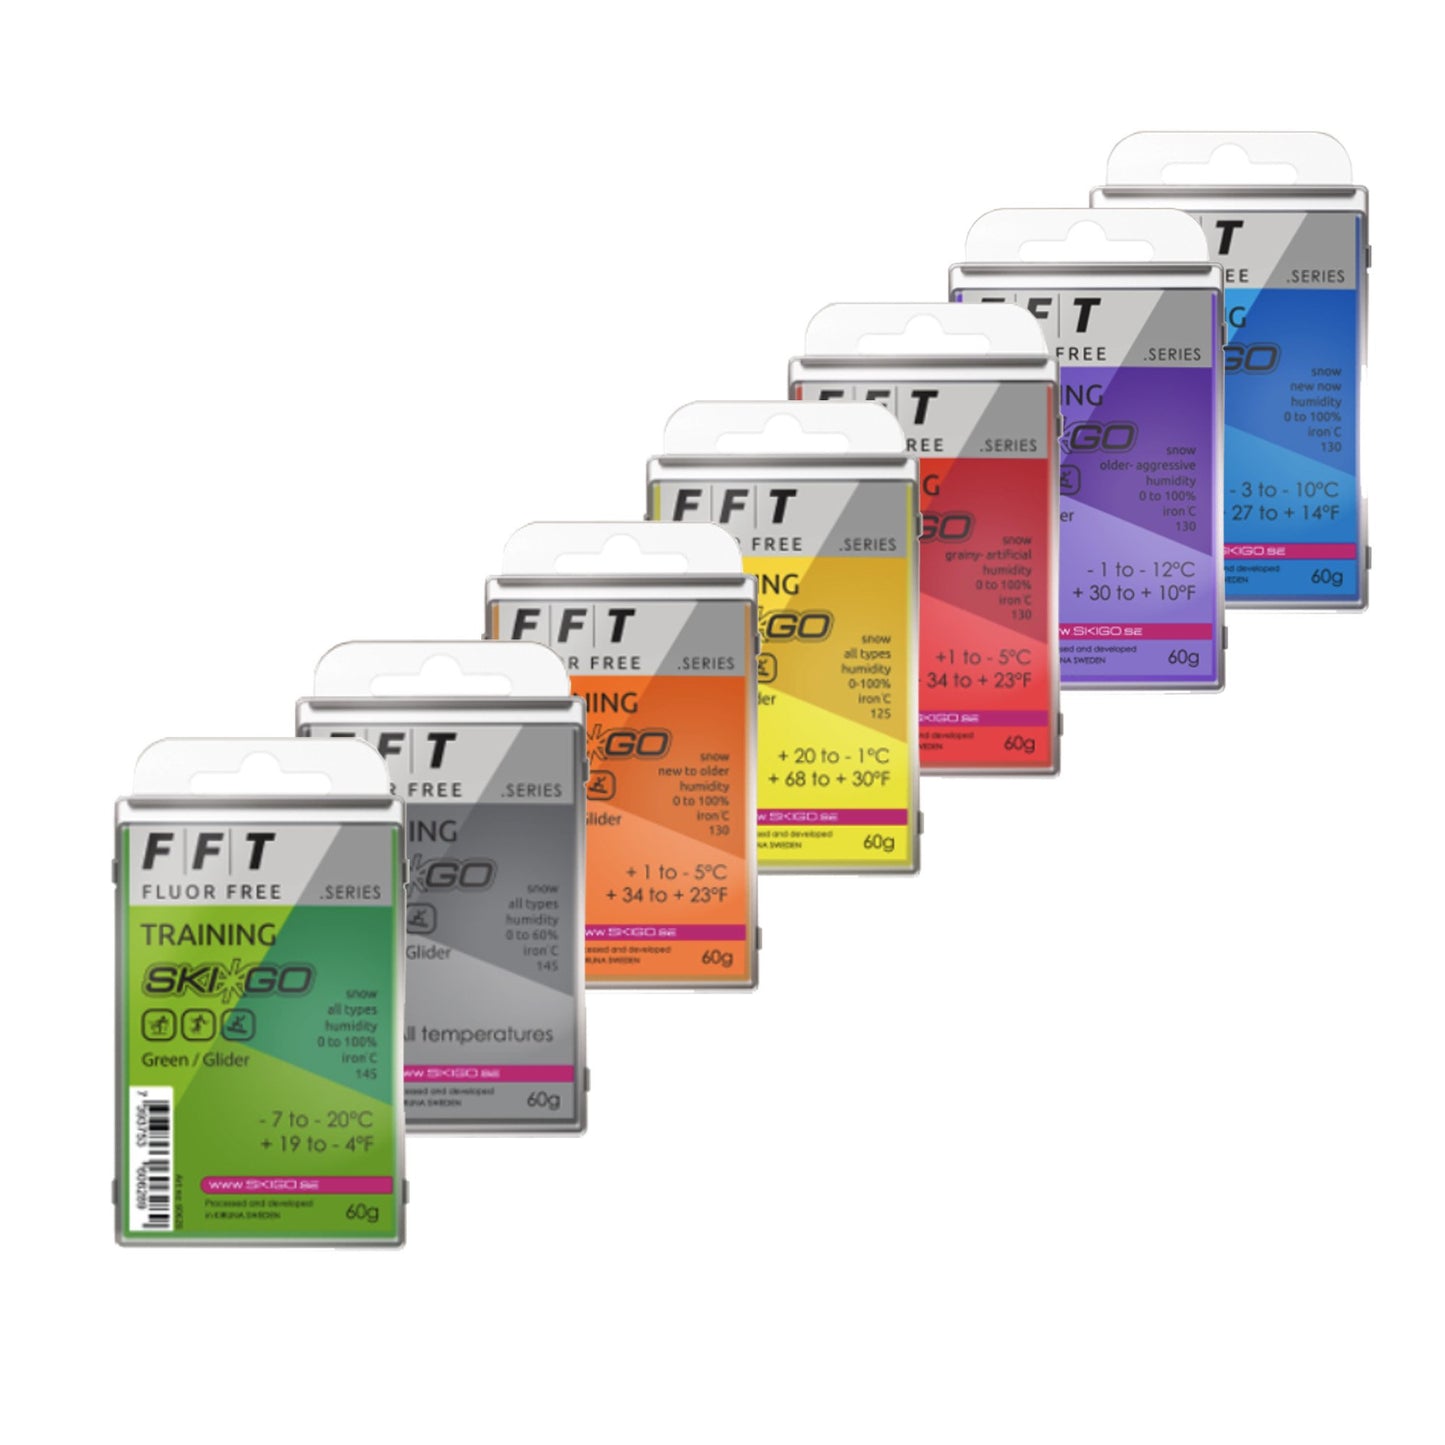 FFT Fluorfritt vax för träning Framgång